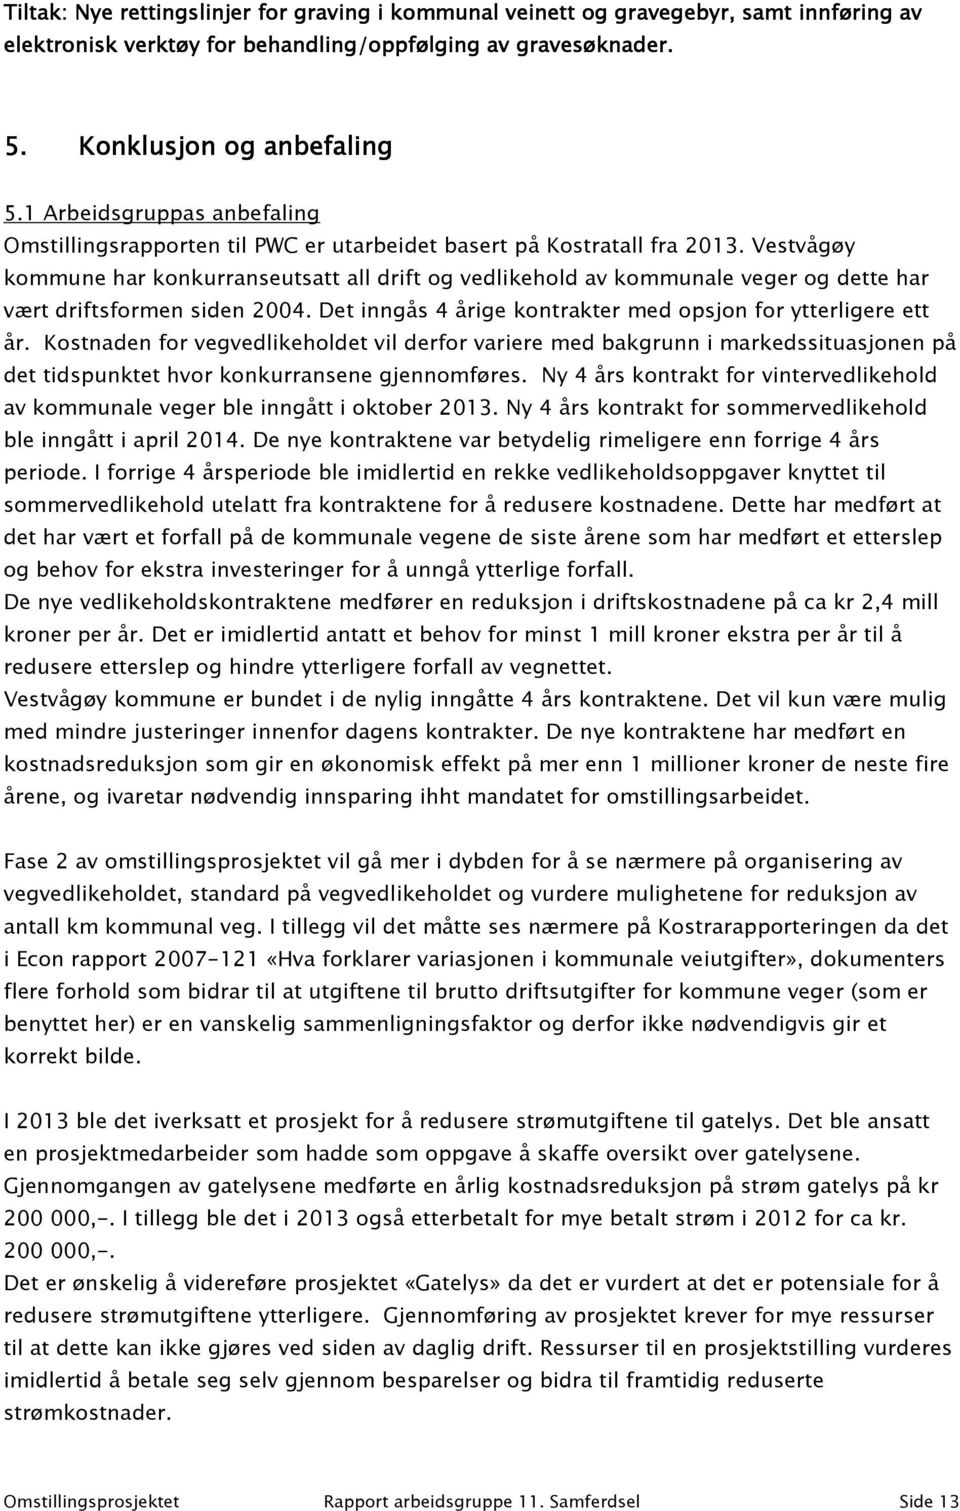 Vestvågøy kommune har konkurranseutsatt all drift og vedlikehold av kommunale veger og dette har vært driftsformen siden 2004. Det inngås 4 årige kontrakter med opsjon for ytterligere ett år.